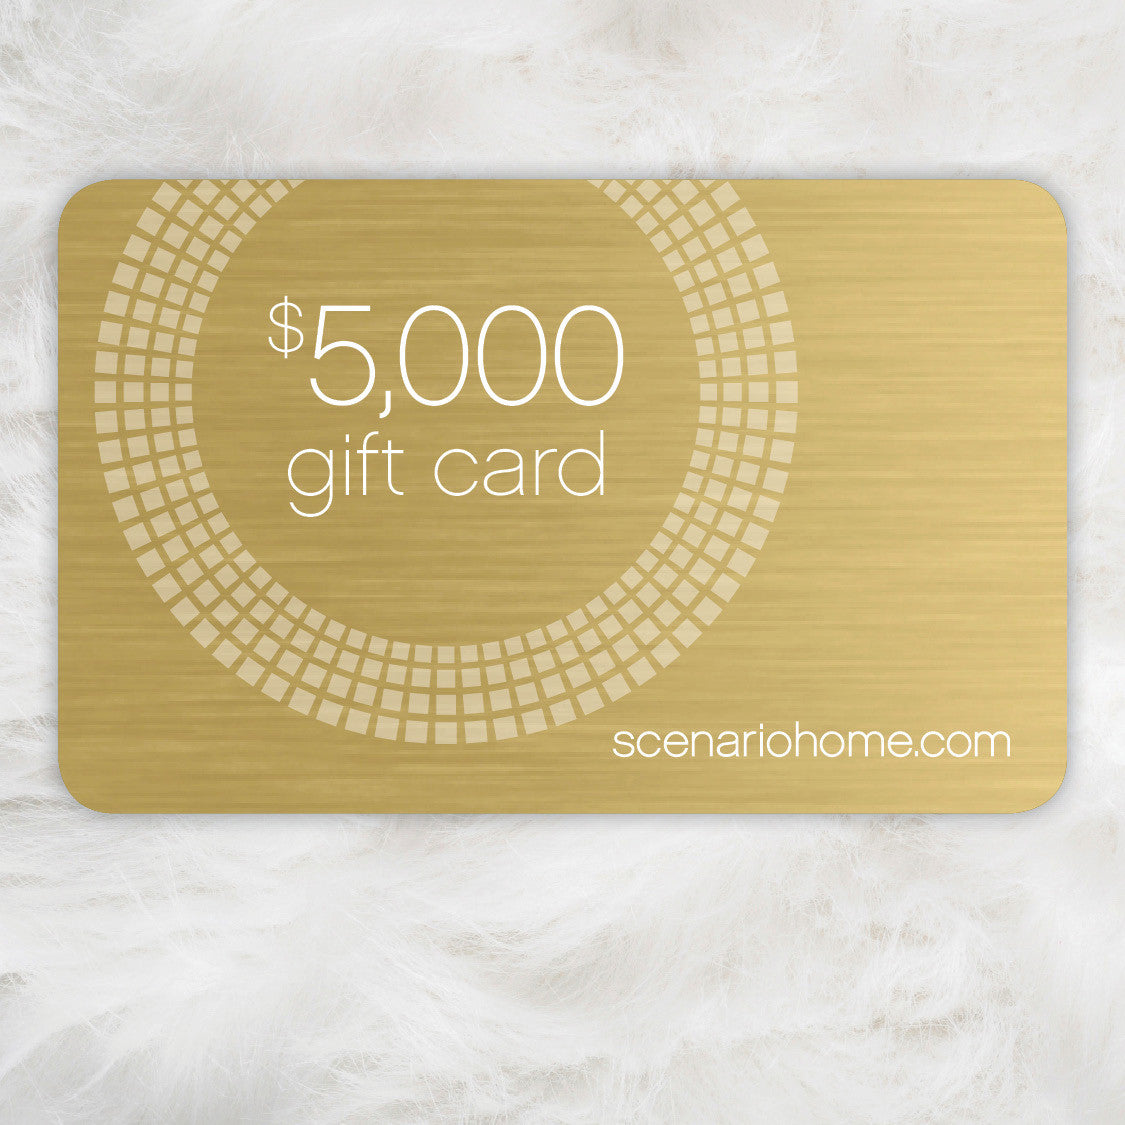 Gift Card - $5000 Scenario Home E-Gift Card